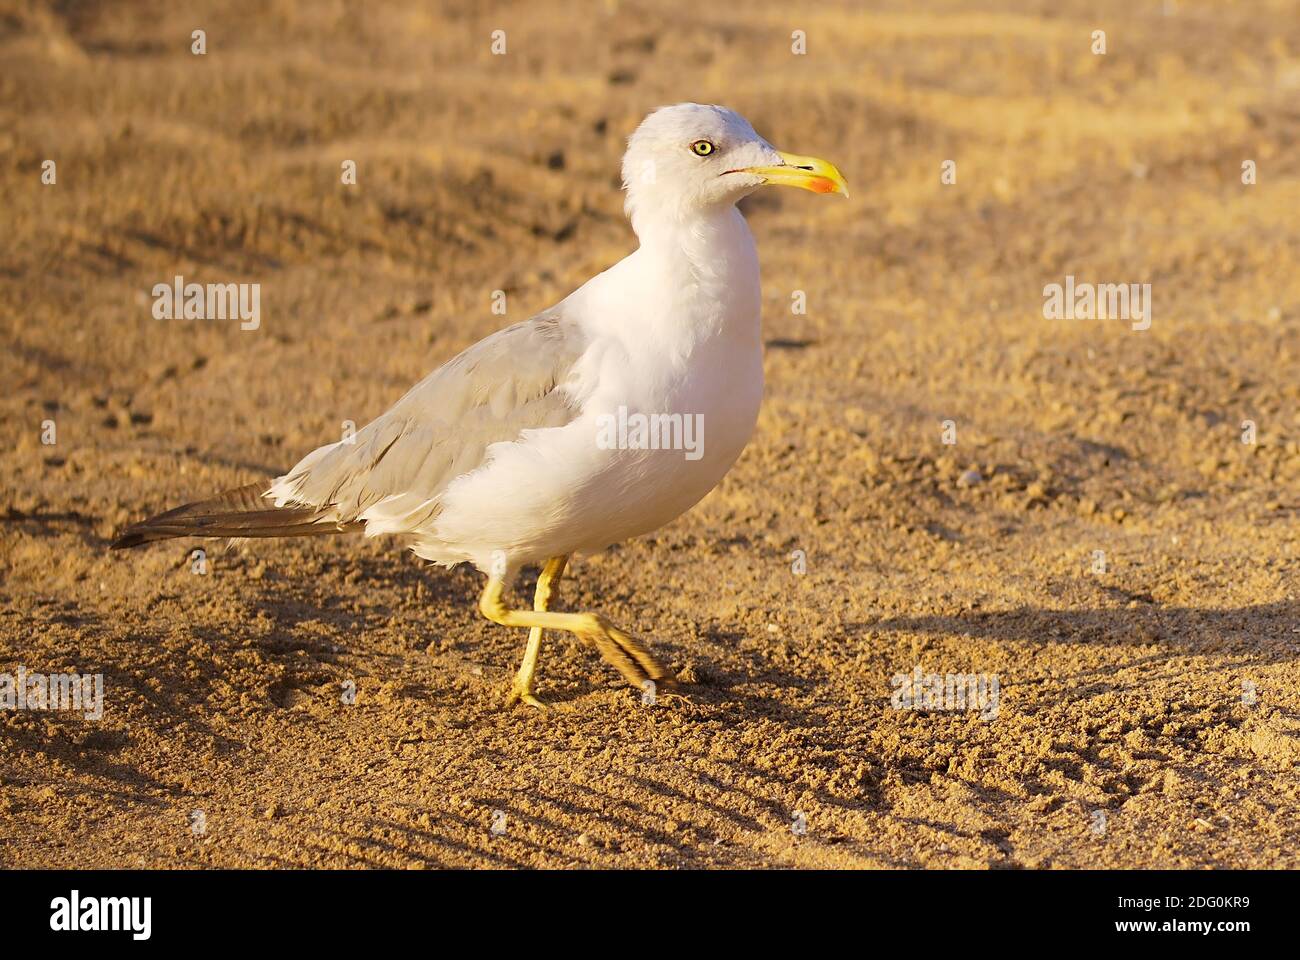 Sea bird seagull on sand beach. nature Stock Photo